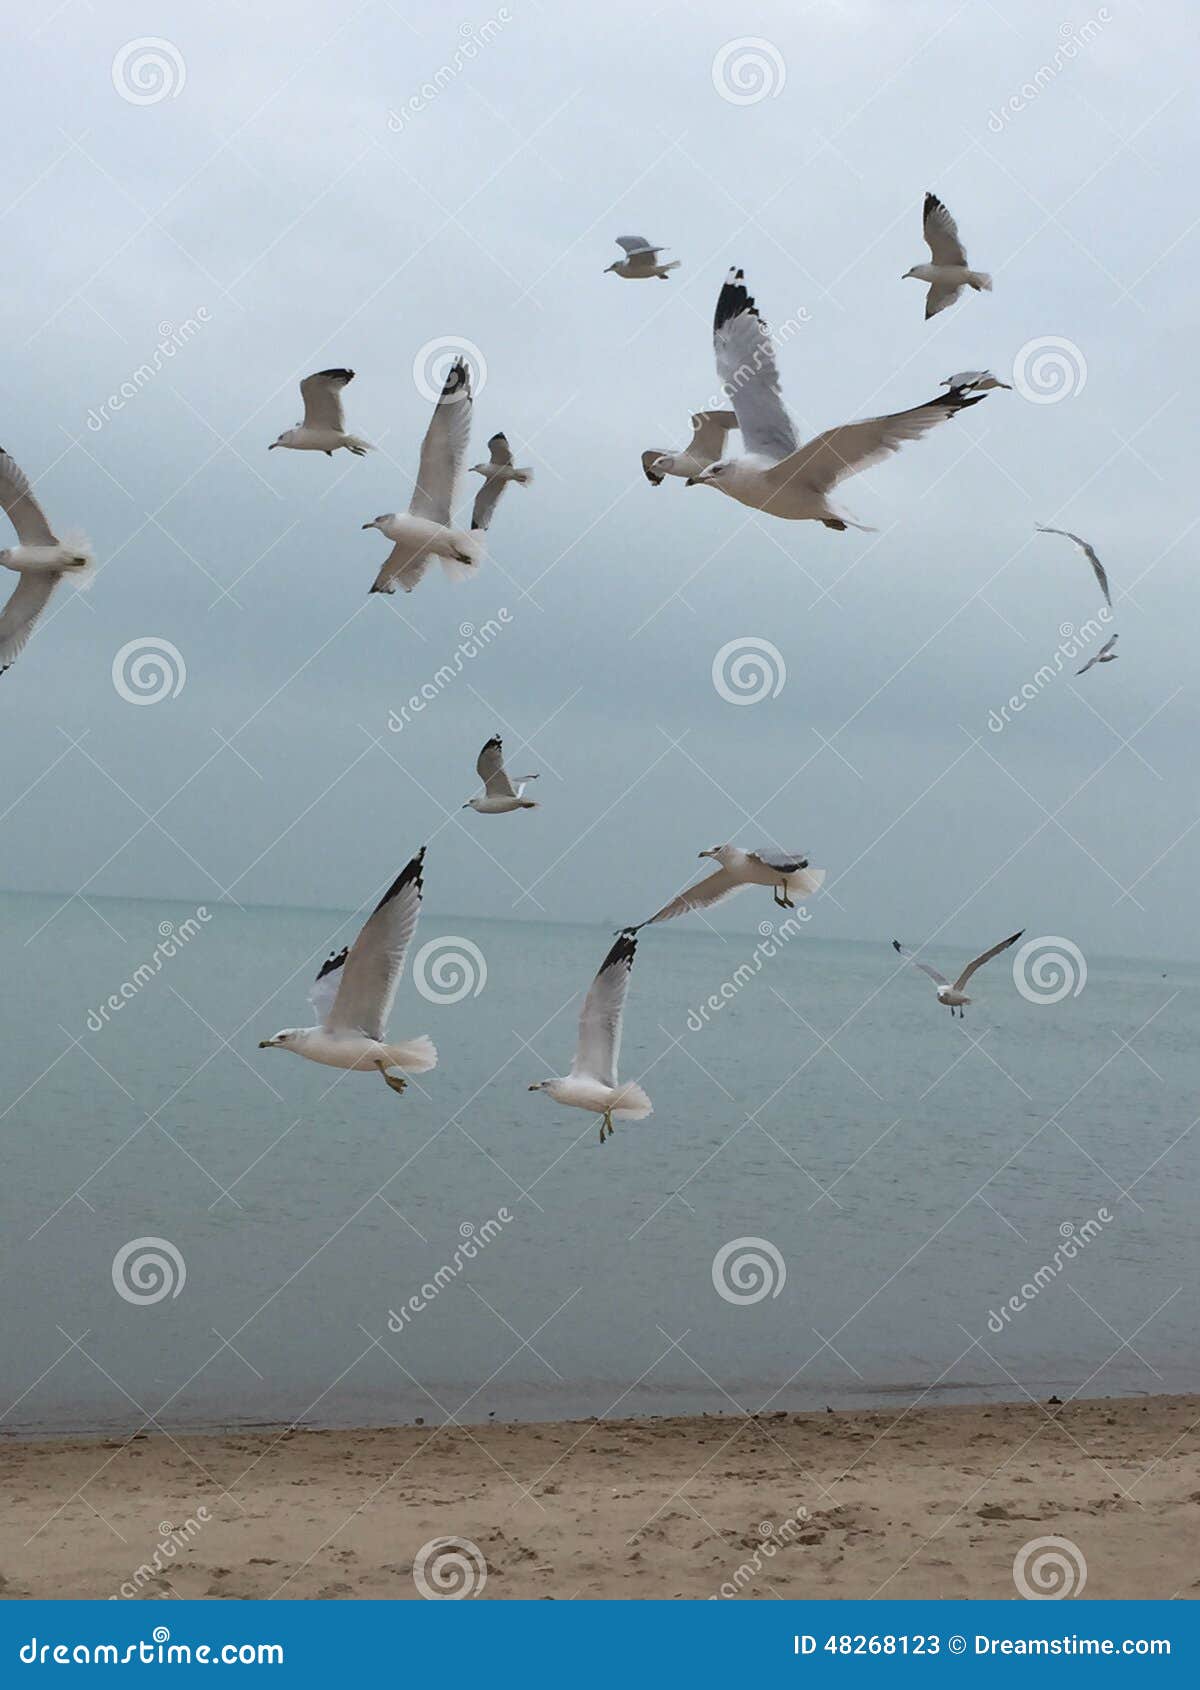 Seagulls in michigan